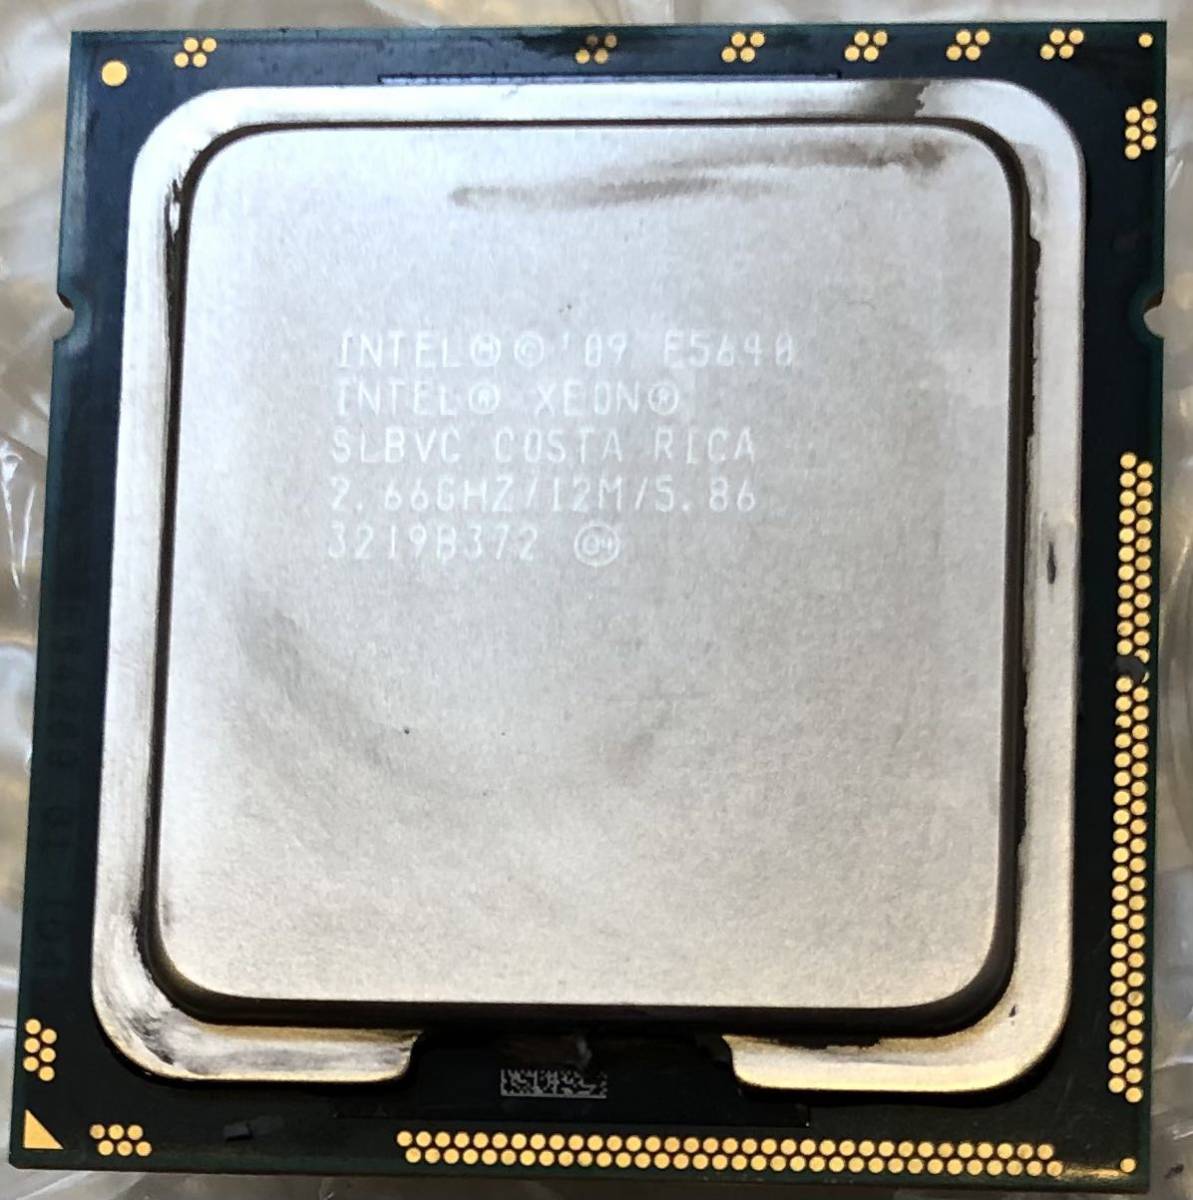 Intel Xeon E5640 2.66GHZ/12M/5.86